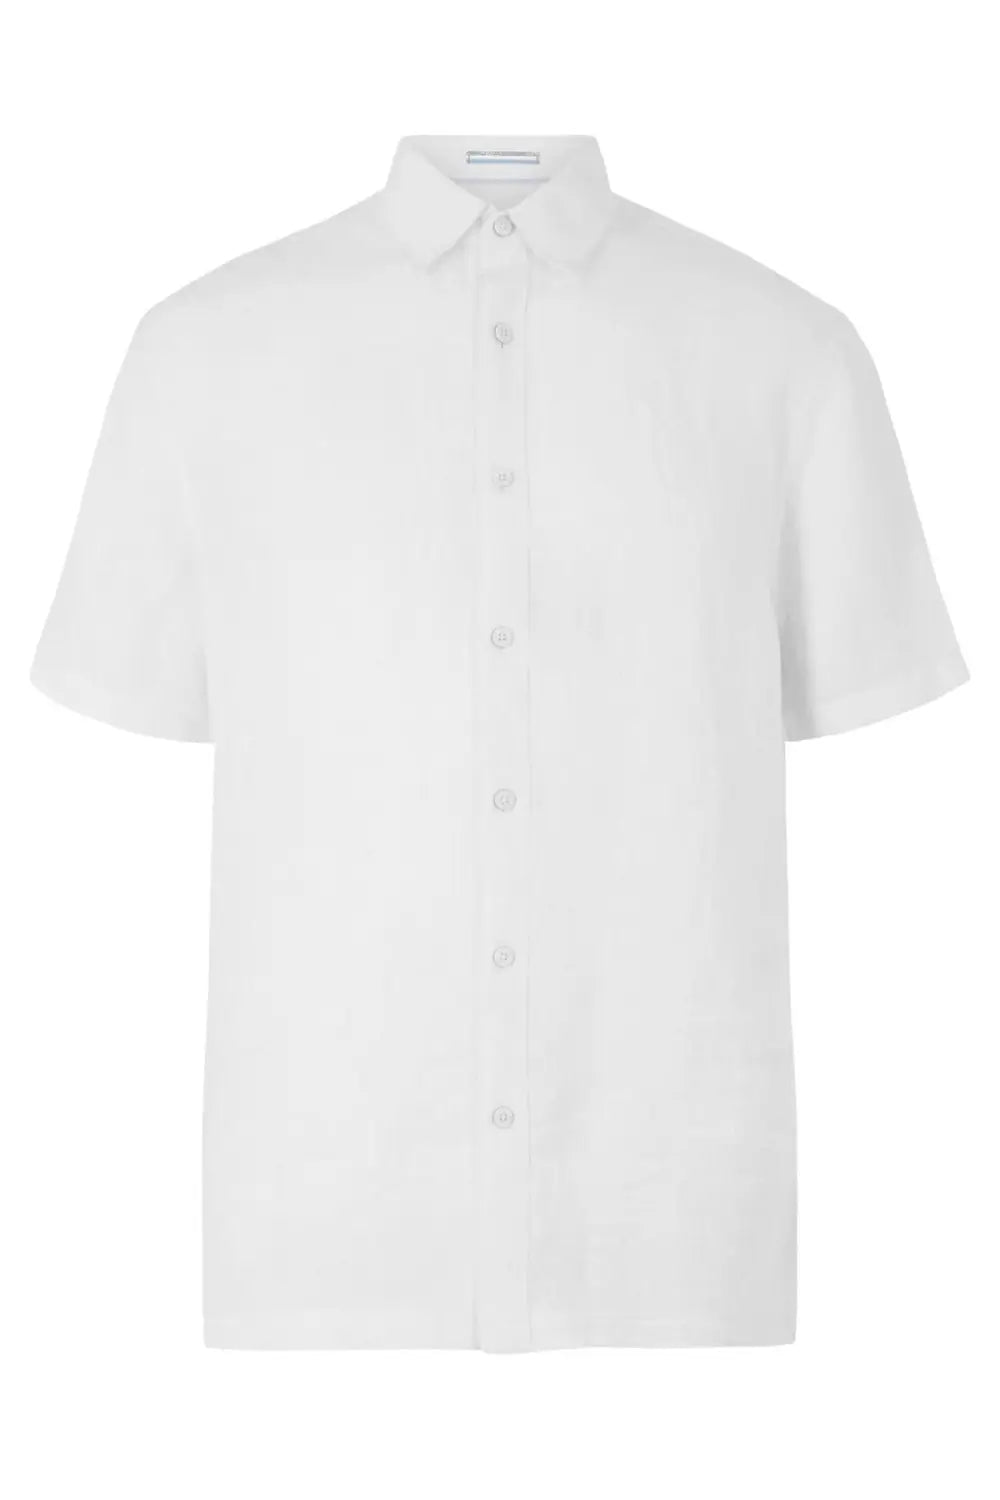 M&S Blue Harbour Short Sleeve Linen Shirt